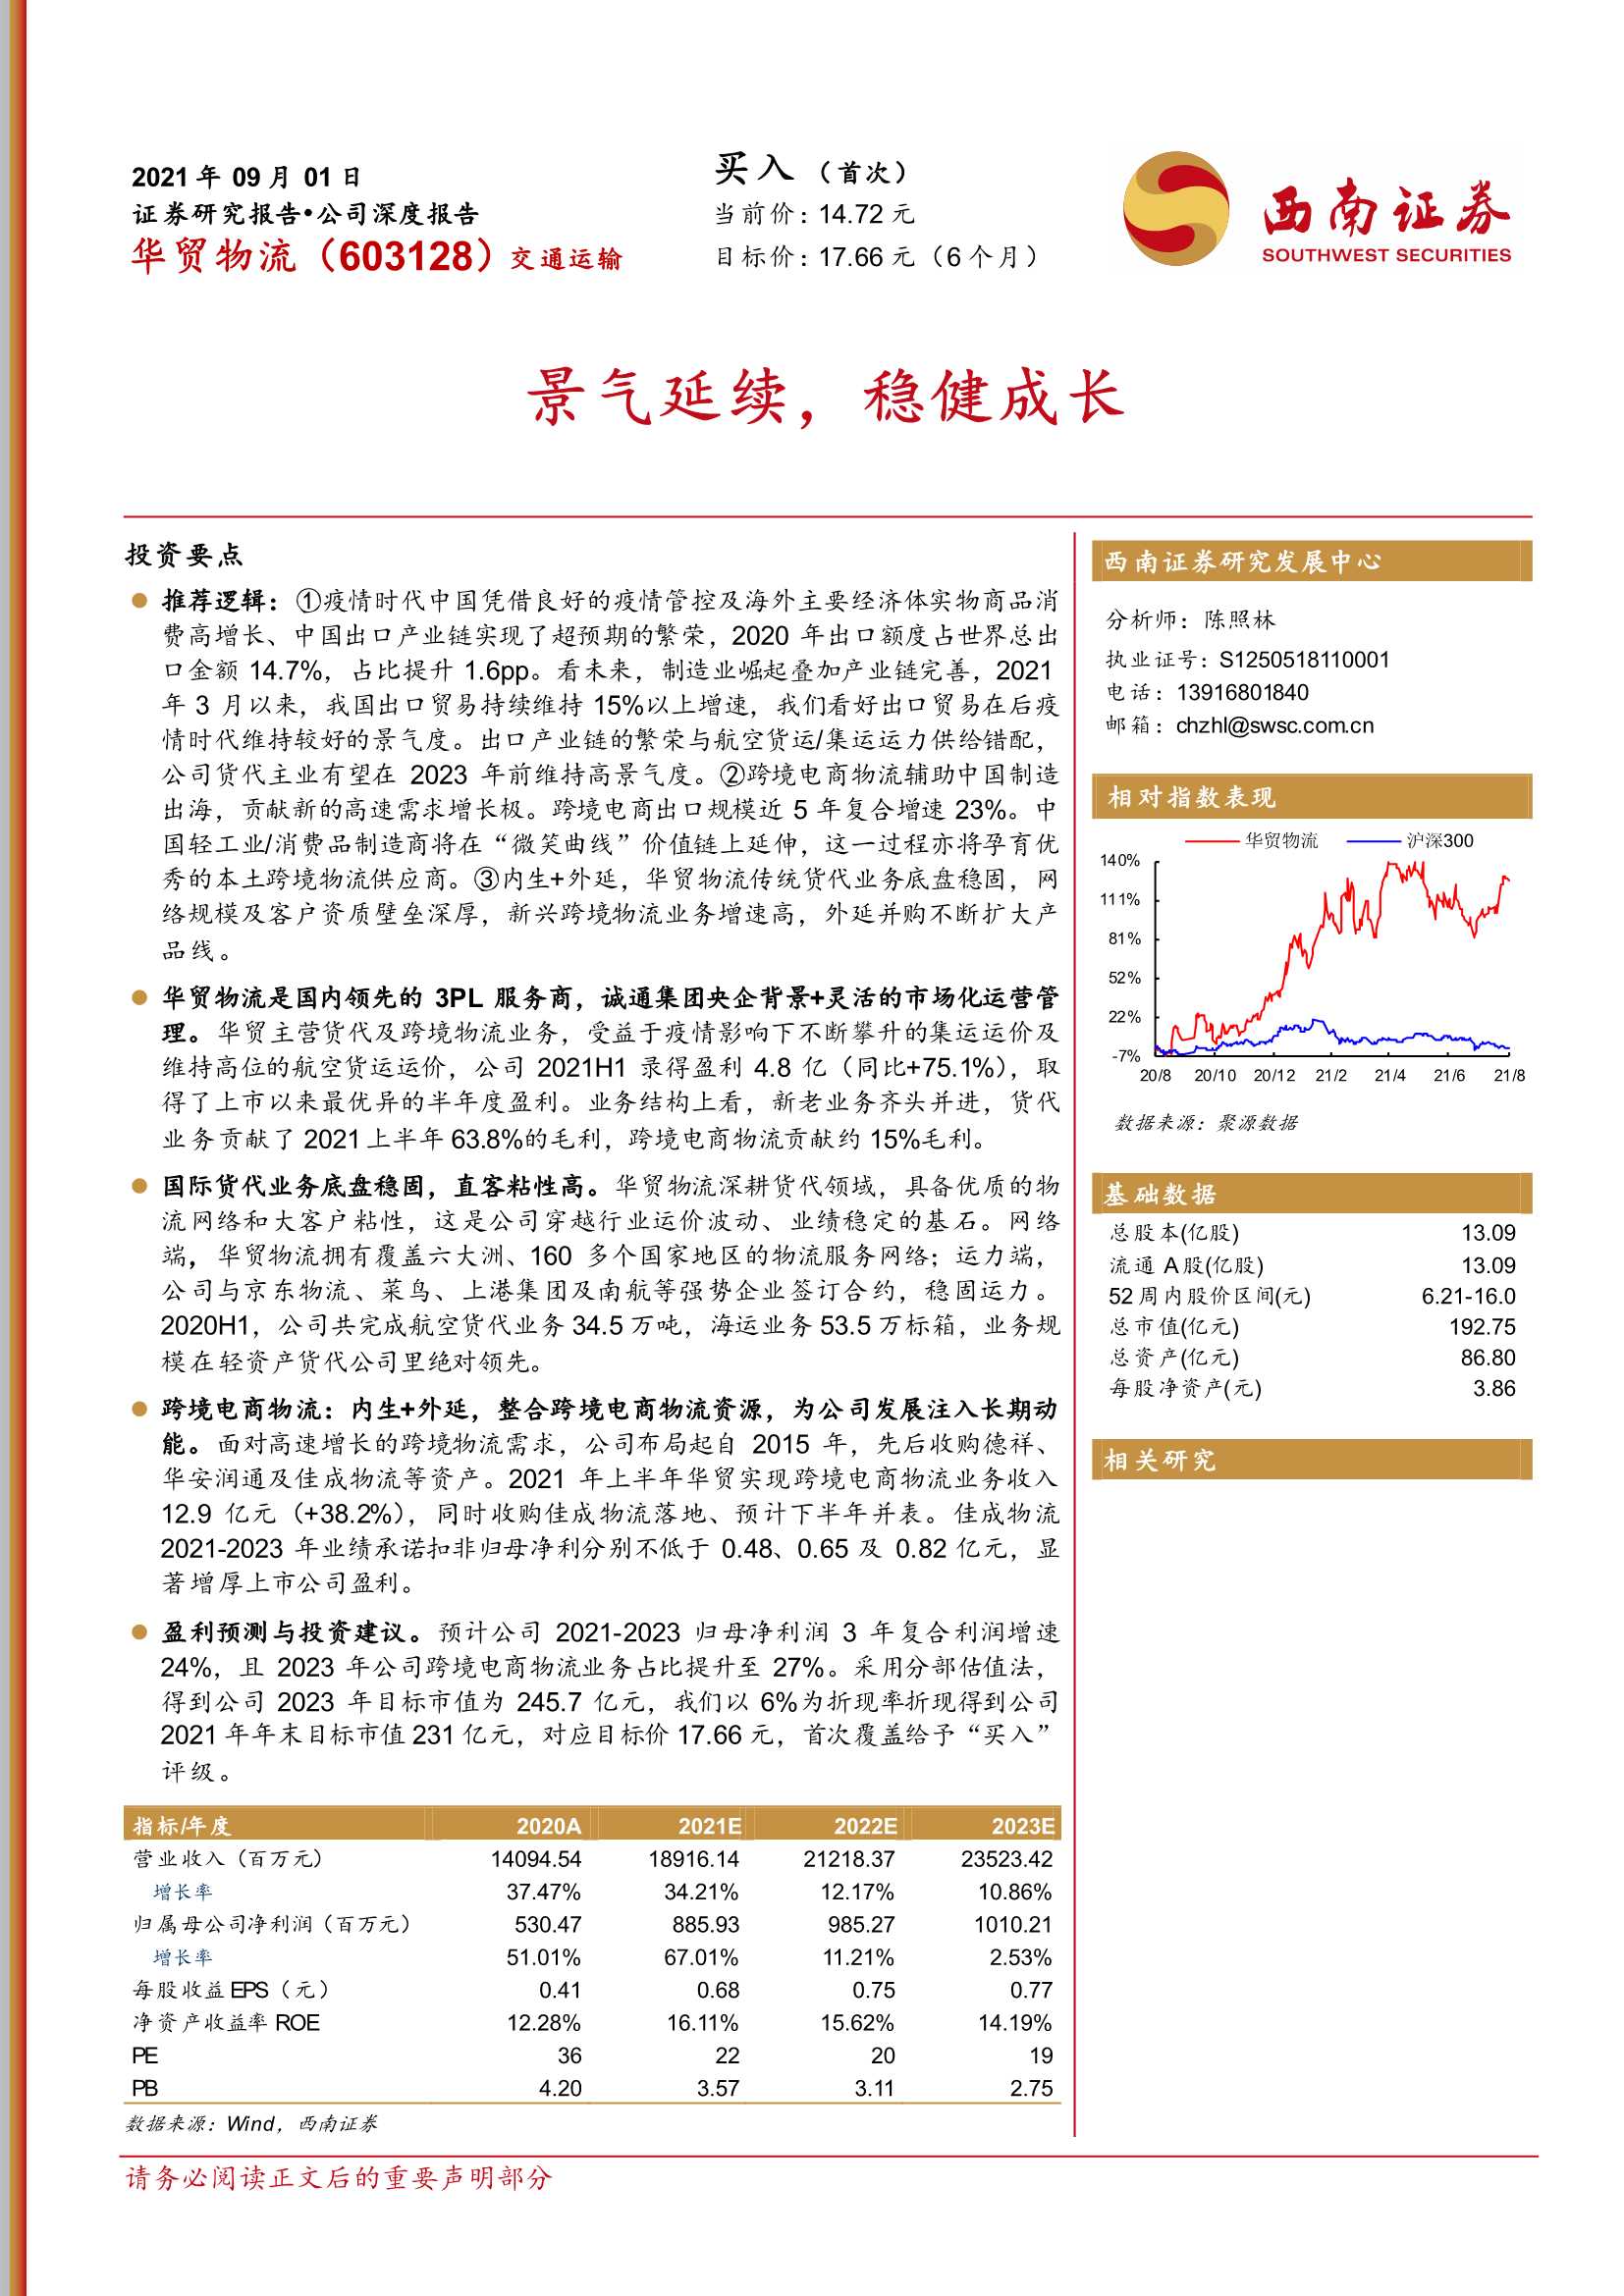 西南证券-华贸物流-603128-景气延续，稳健成长-20210901-39页